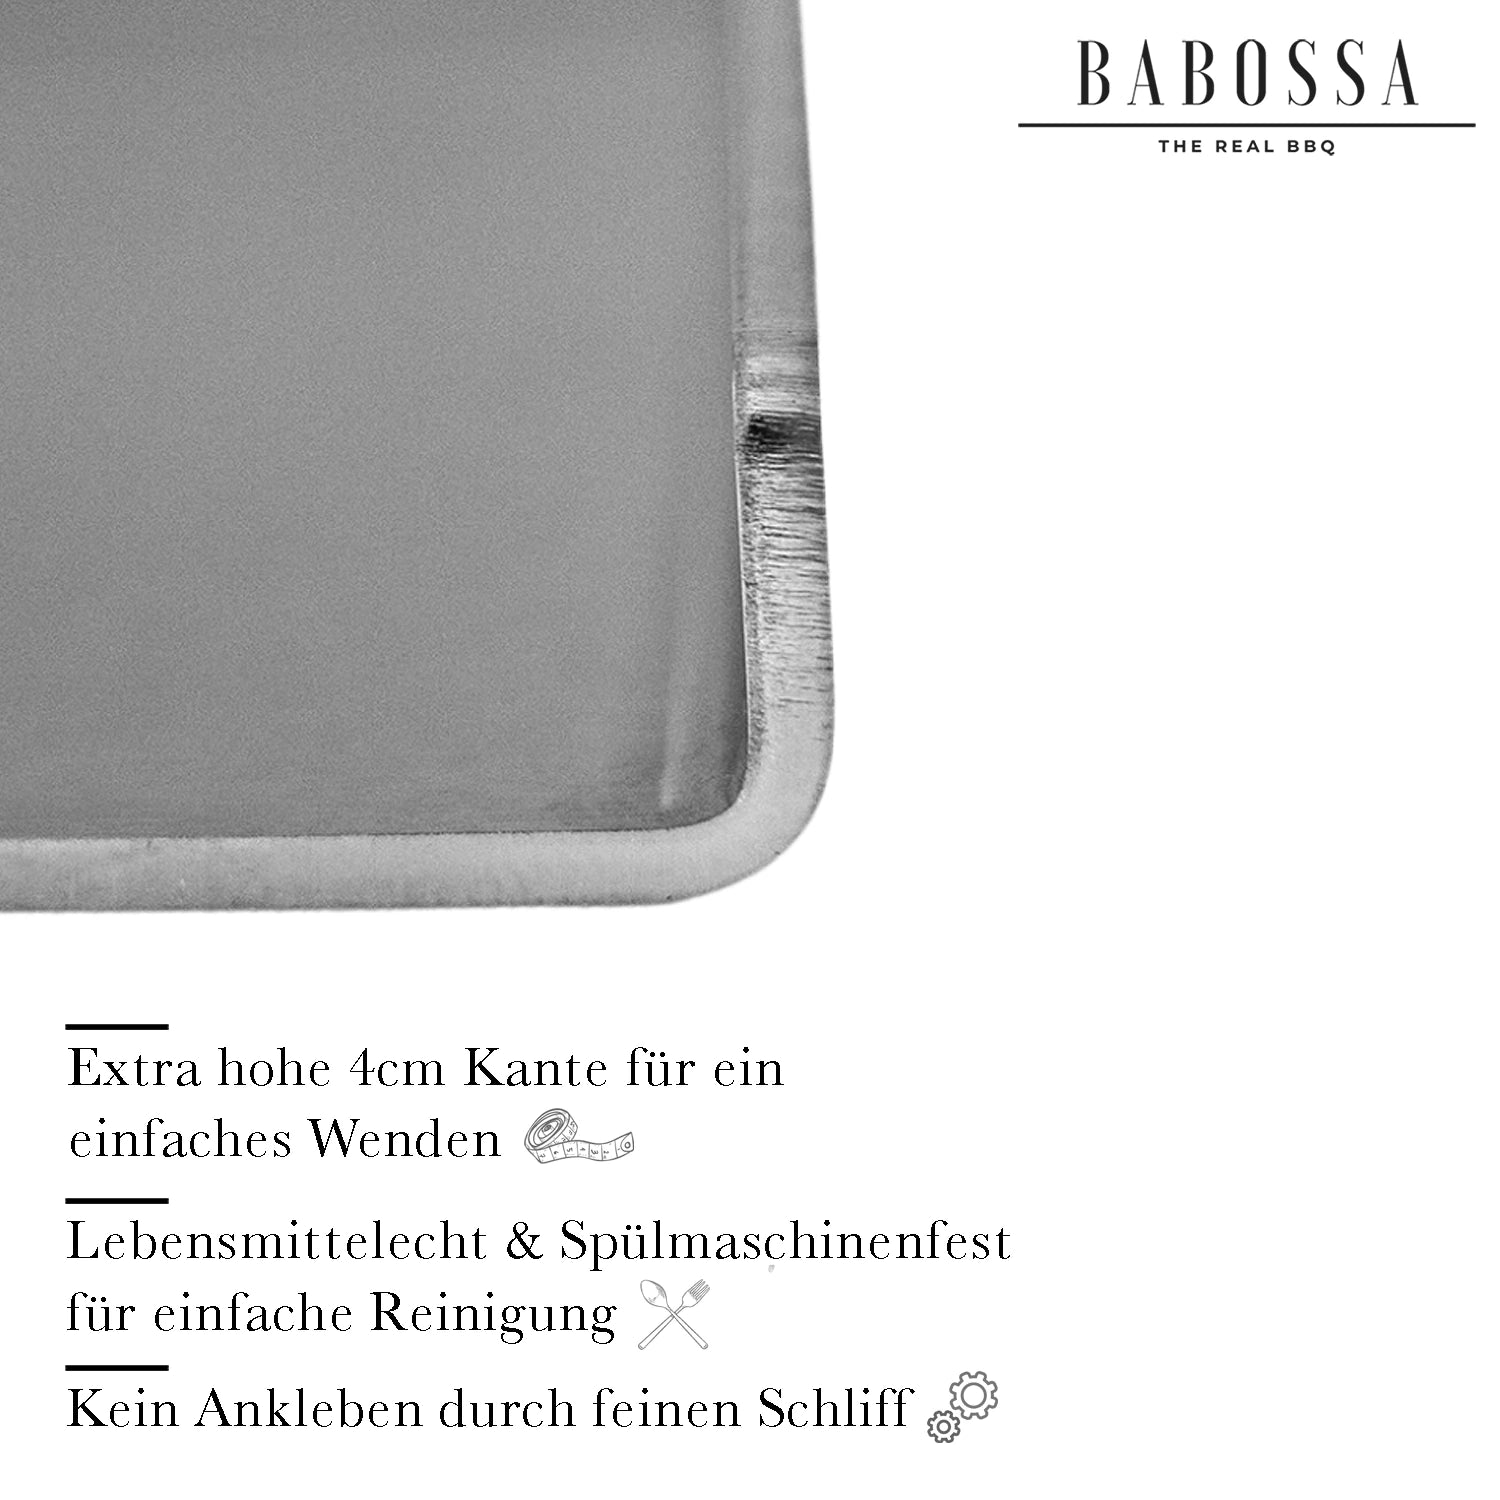 Plancha | Grillplatte | V2A Edelstahl | Rösle Vario Edition | 23,5x44,5cm